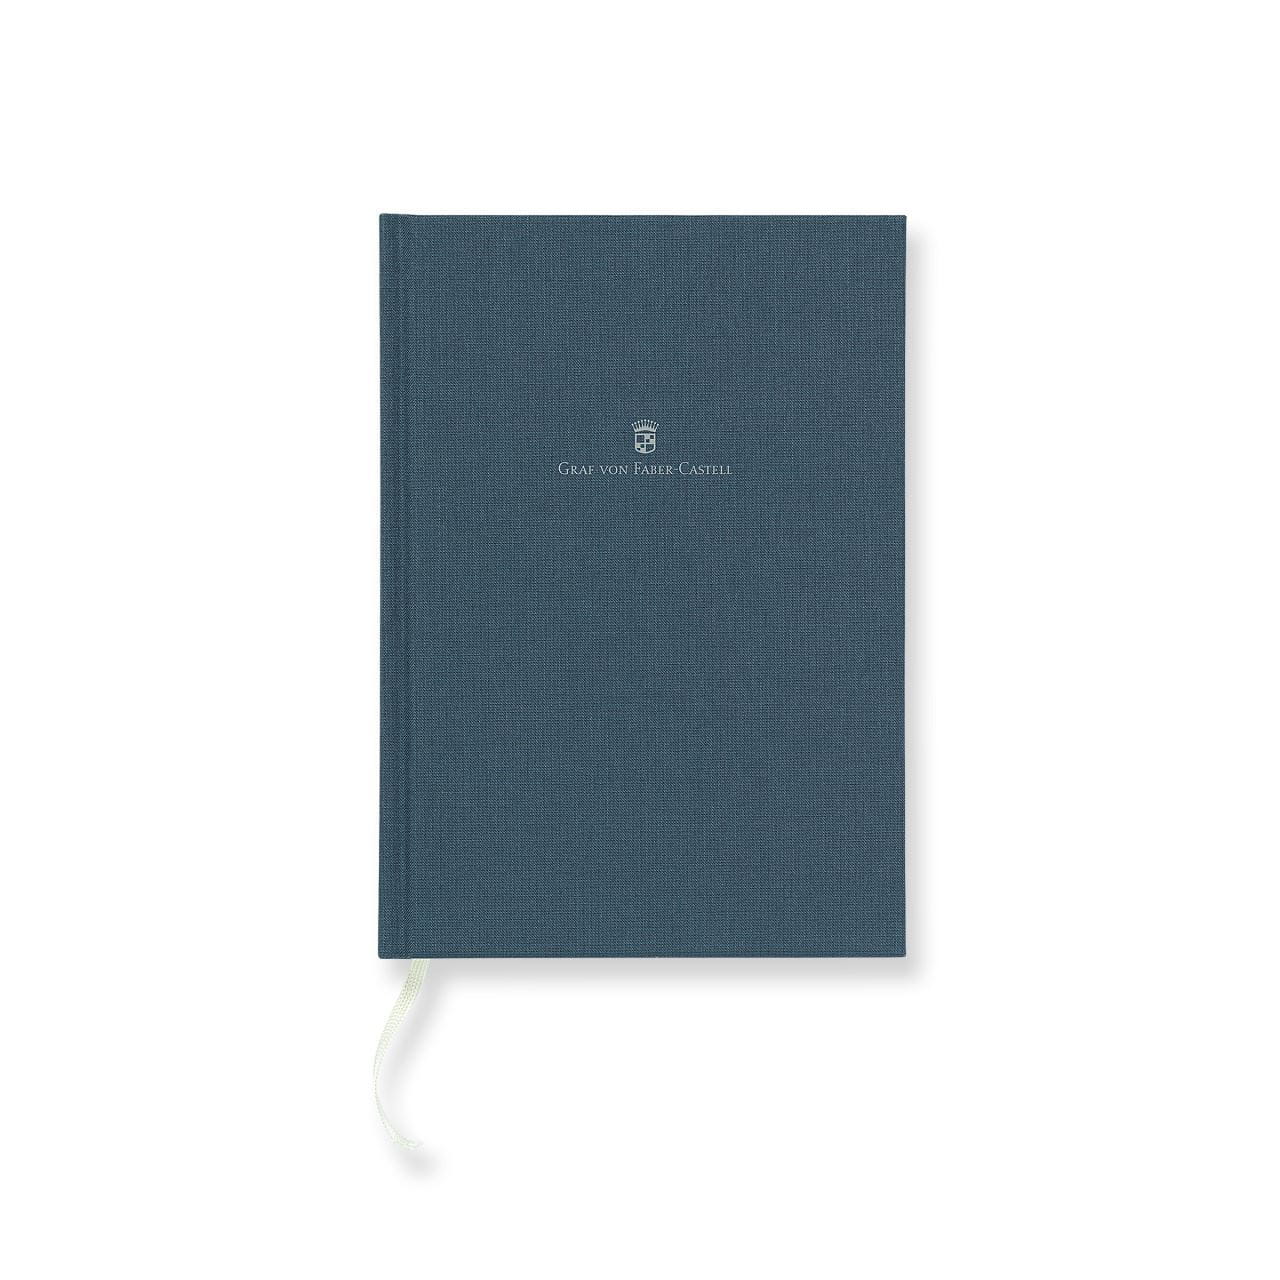 Graf-von-Faber-Castell - Book con copertina in lino A5 Blu Notte